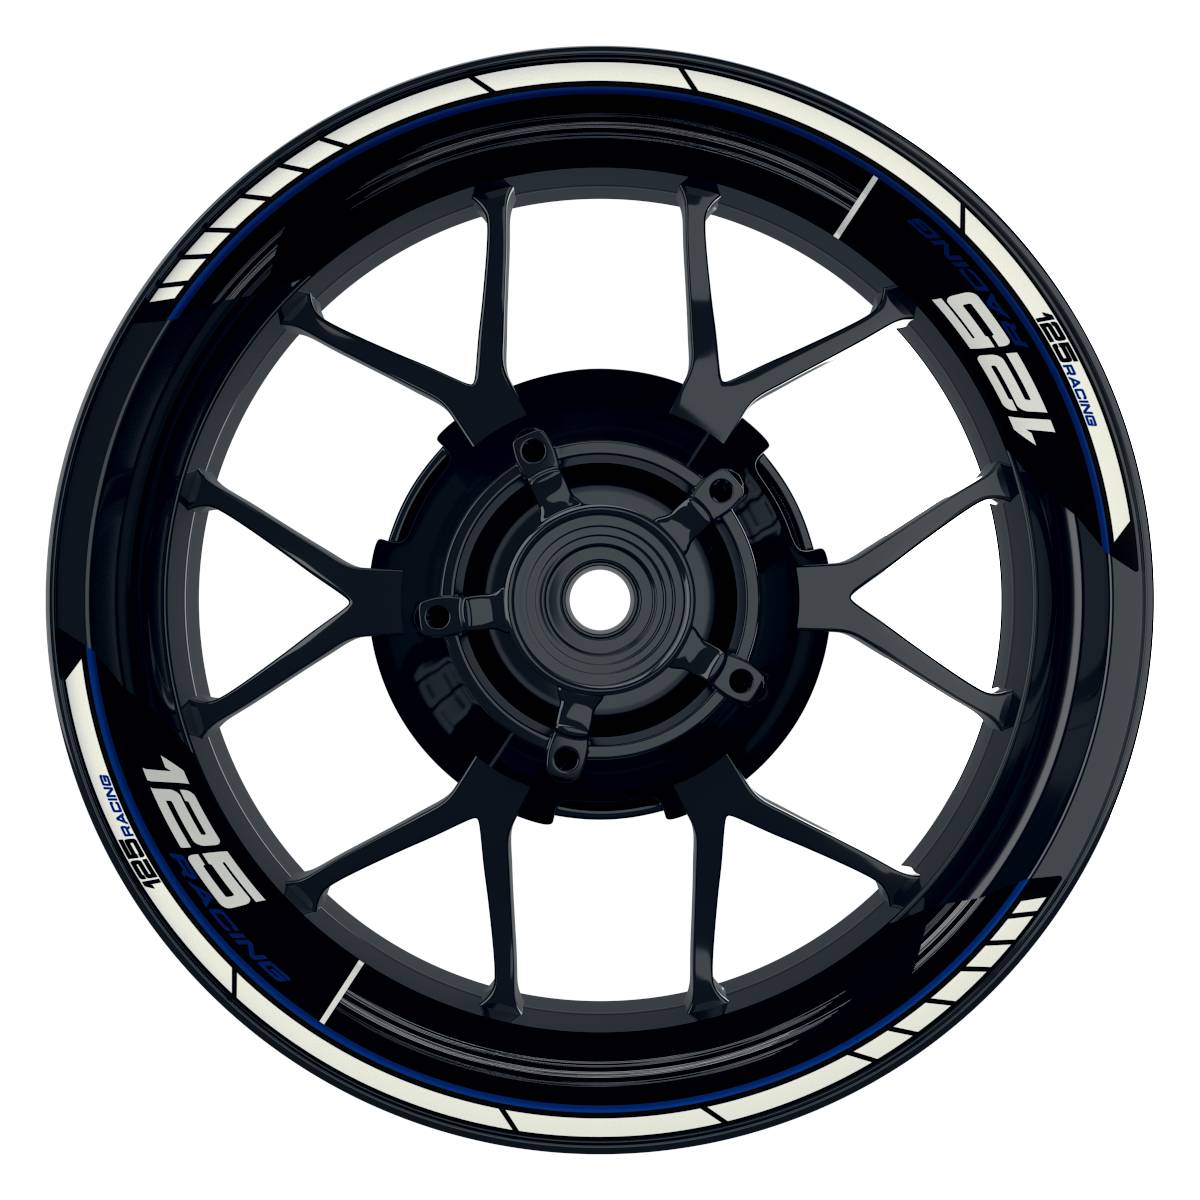 KTM Racing 125 Scratched schwarz blau Frontansicht